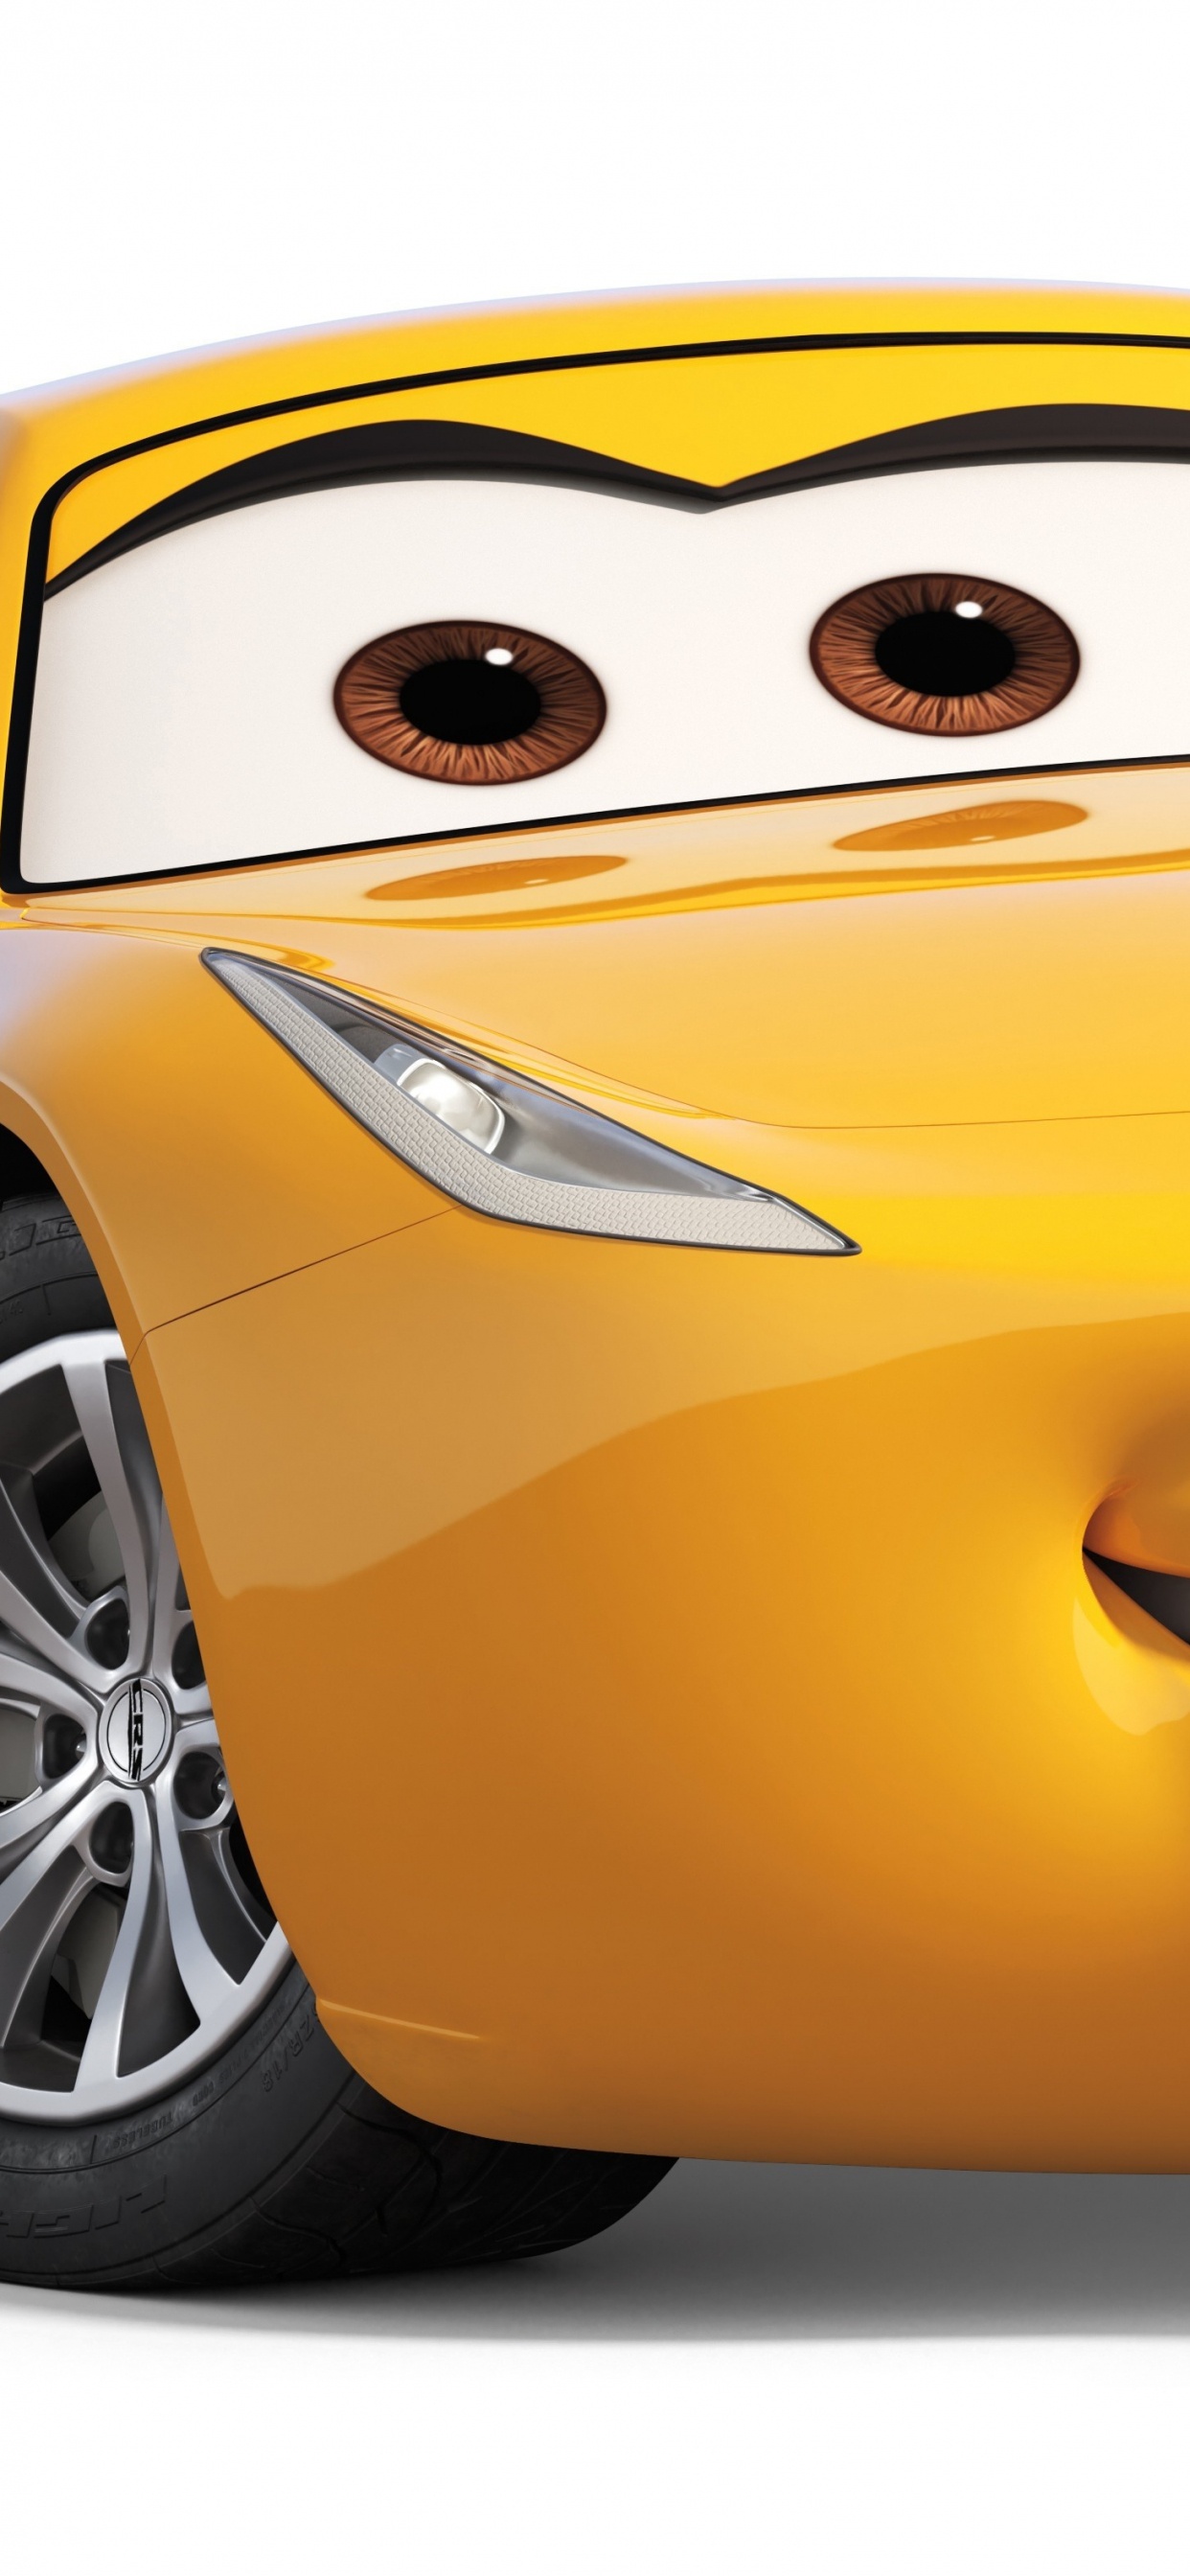 克鲁斯*拉米雷斯, 皮克斯, 黄色的, 概念车, 小型汽车 壁纸 1242x2688 允许